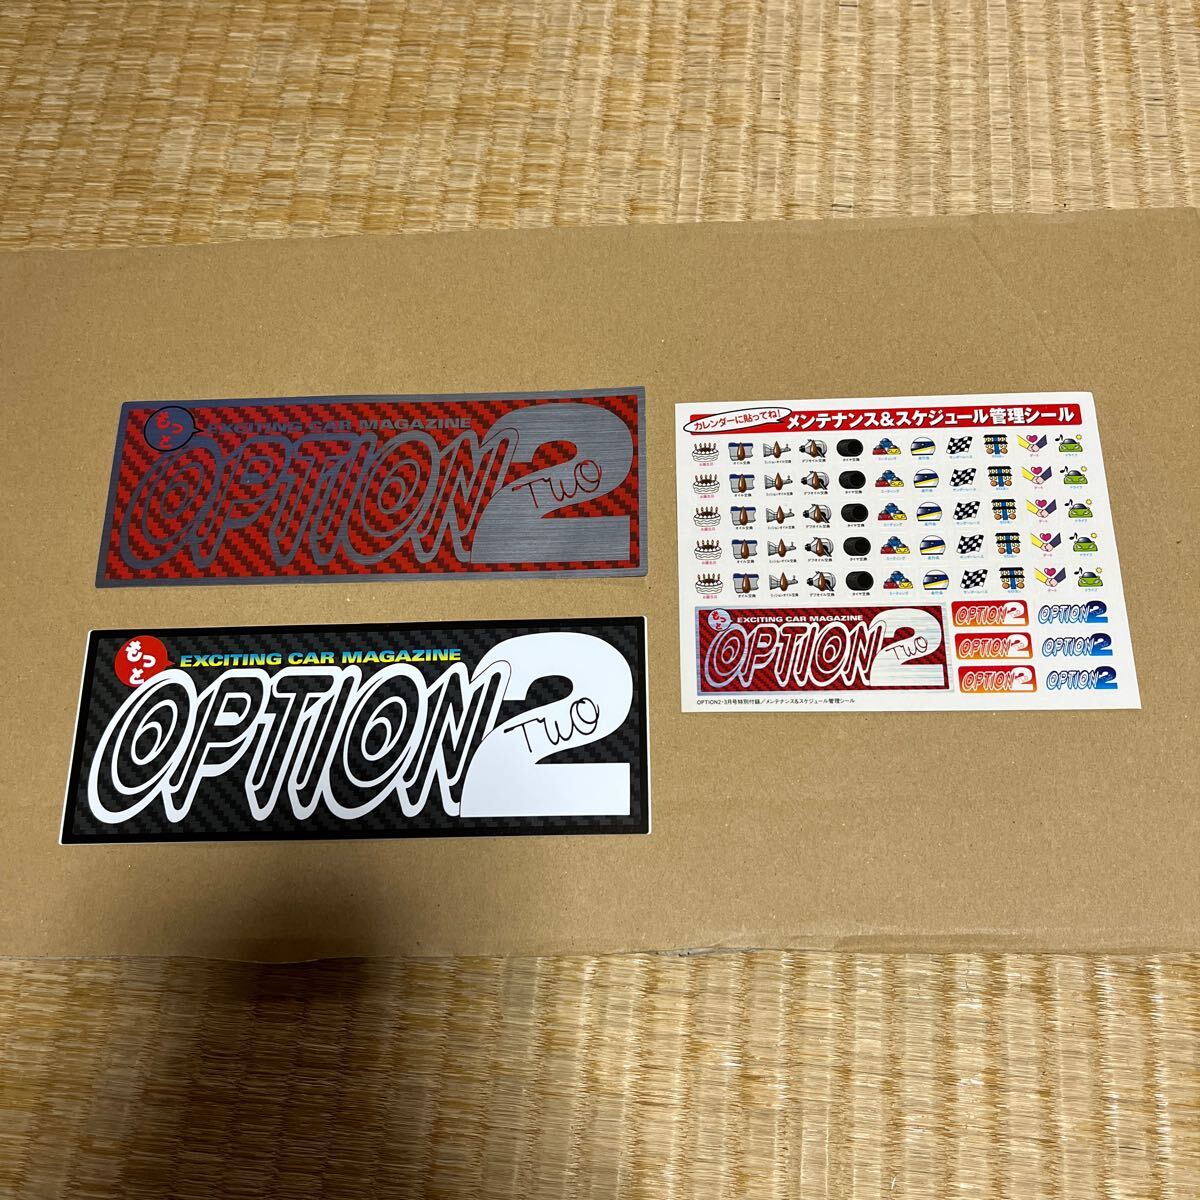  стикер OPTION2 стикер OPTION23 месяц номер специальный дополнение Tokyo авто салон опция 2 дрифт рукоятка circuit Running man 1 иен старт 